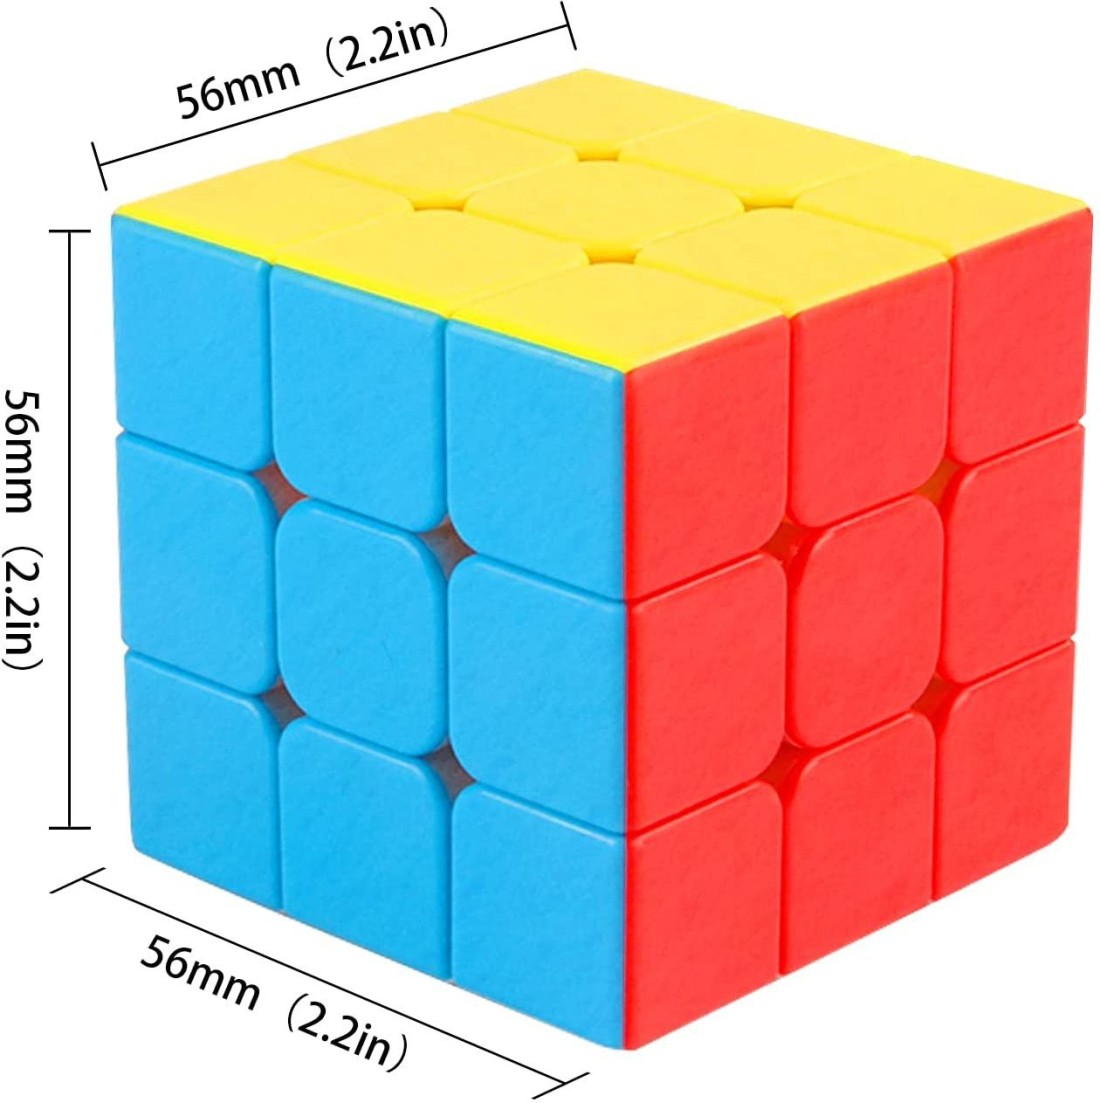 hmc High Speed Rubic Cube 3x3x3 by SHREE EXIM - High Speed Rubic